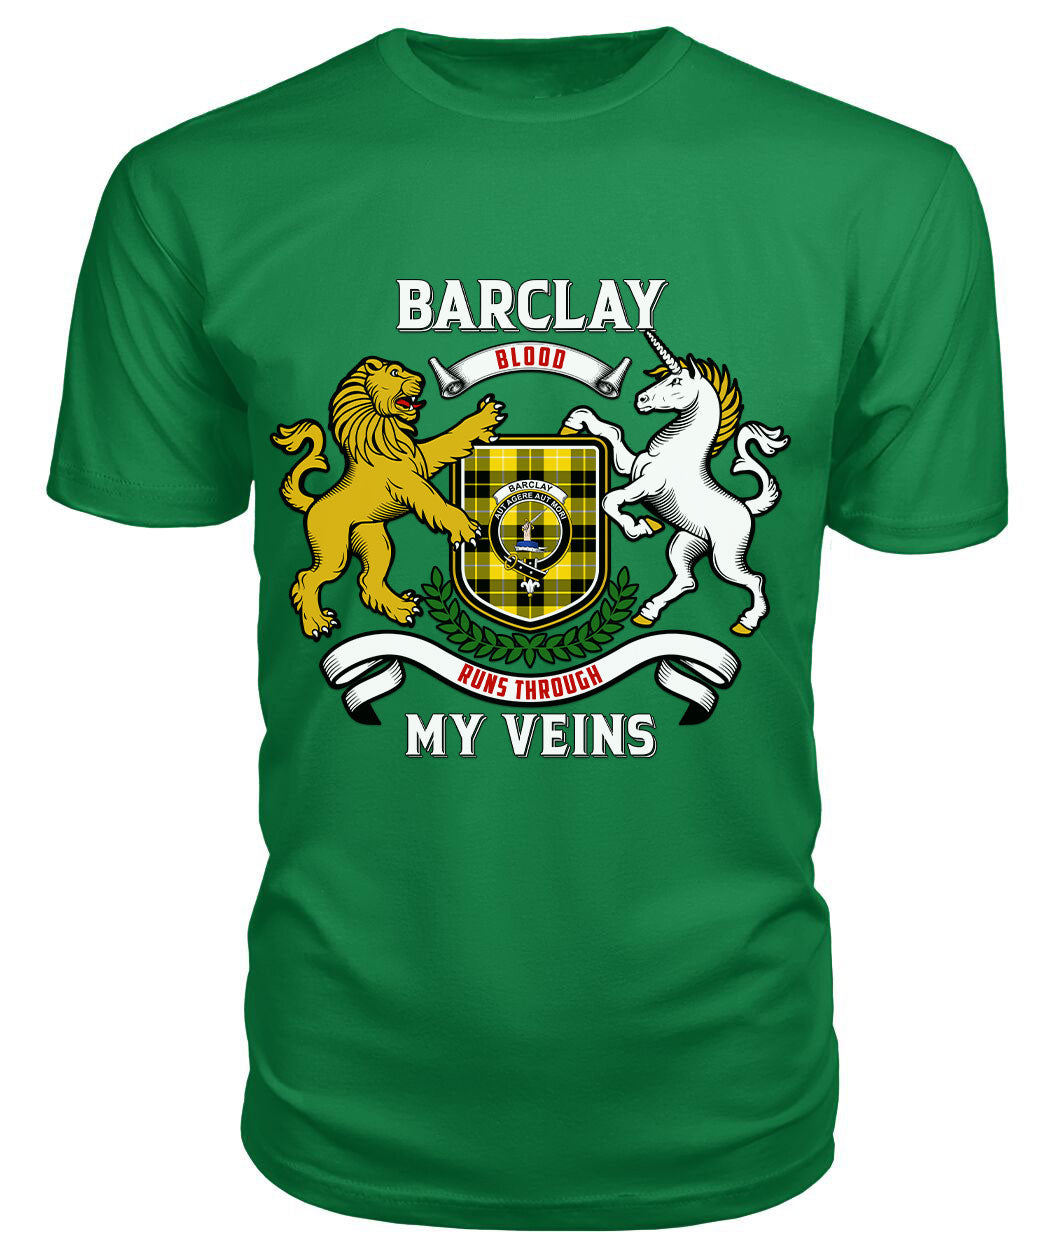 Barclay Dress Modern Tartan Crest 2D T-shirt - Blood Runs Through My Veins Style